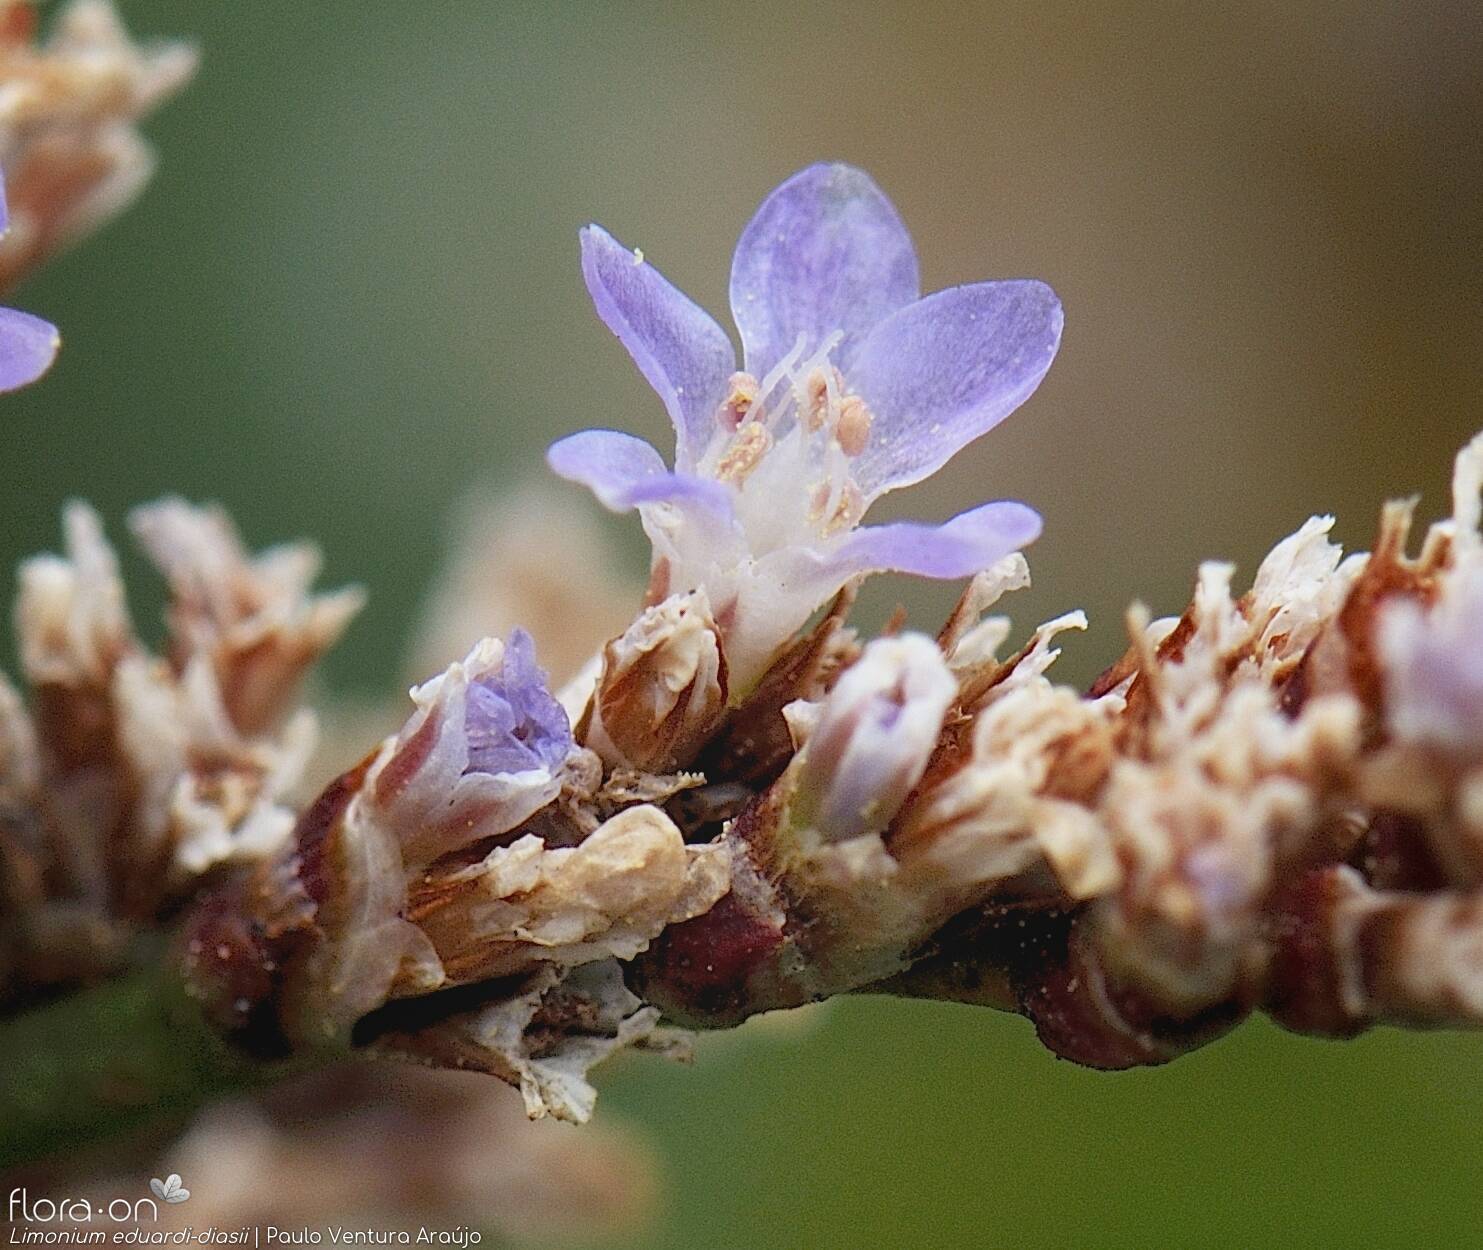 Limonium eduardi-diasii - Flor (close-up) | Paulo Ventura Araújo; CC BY-NC 4.0